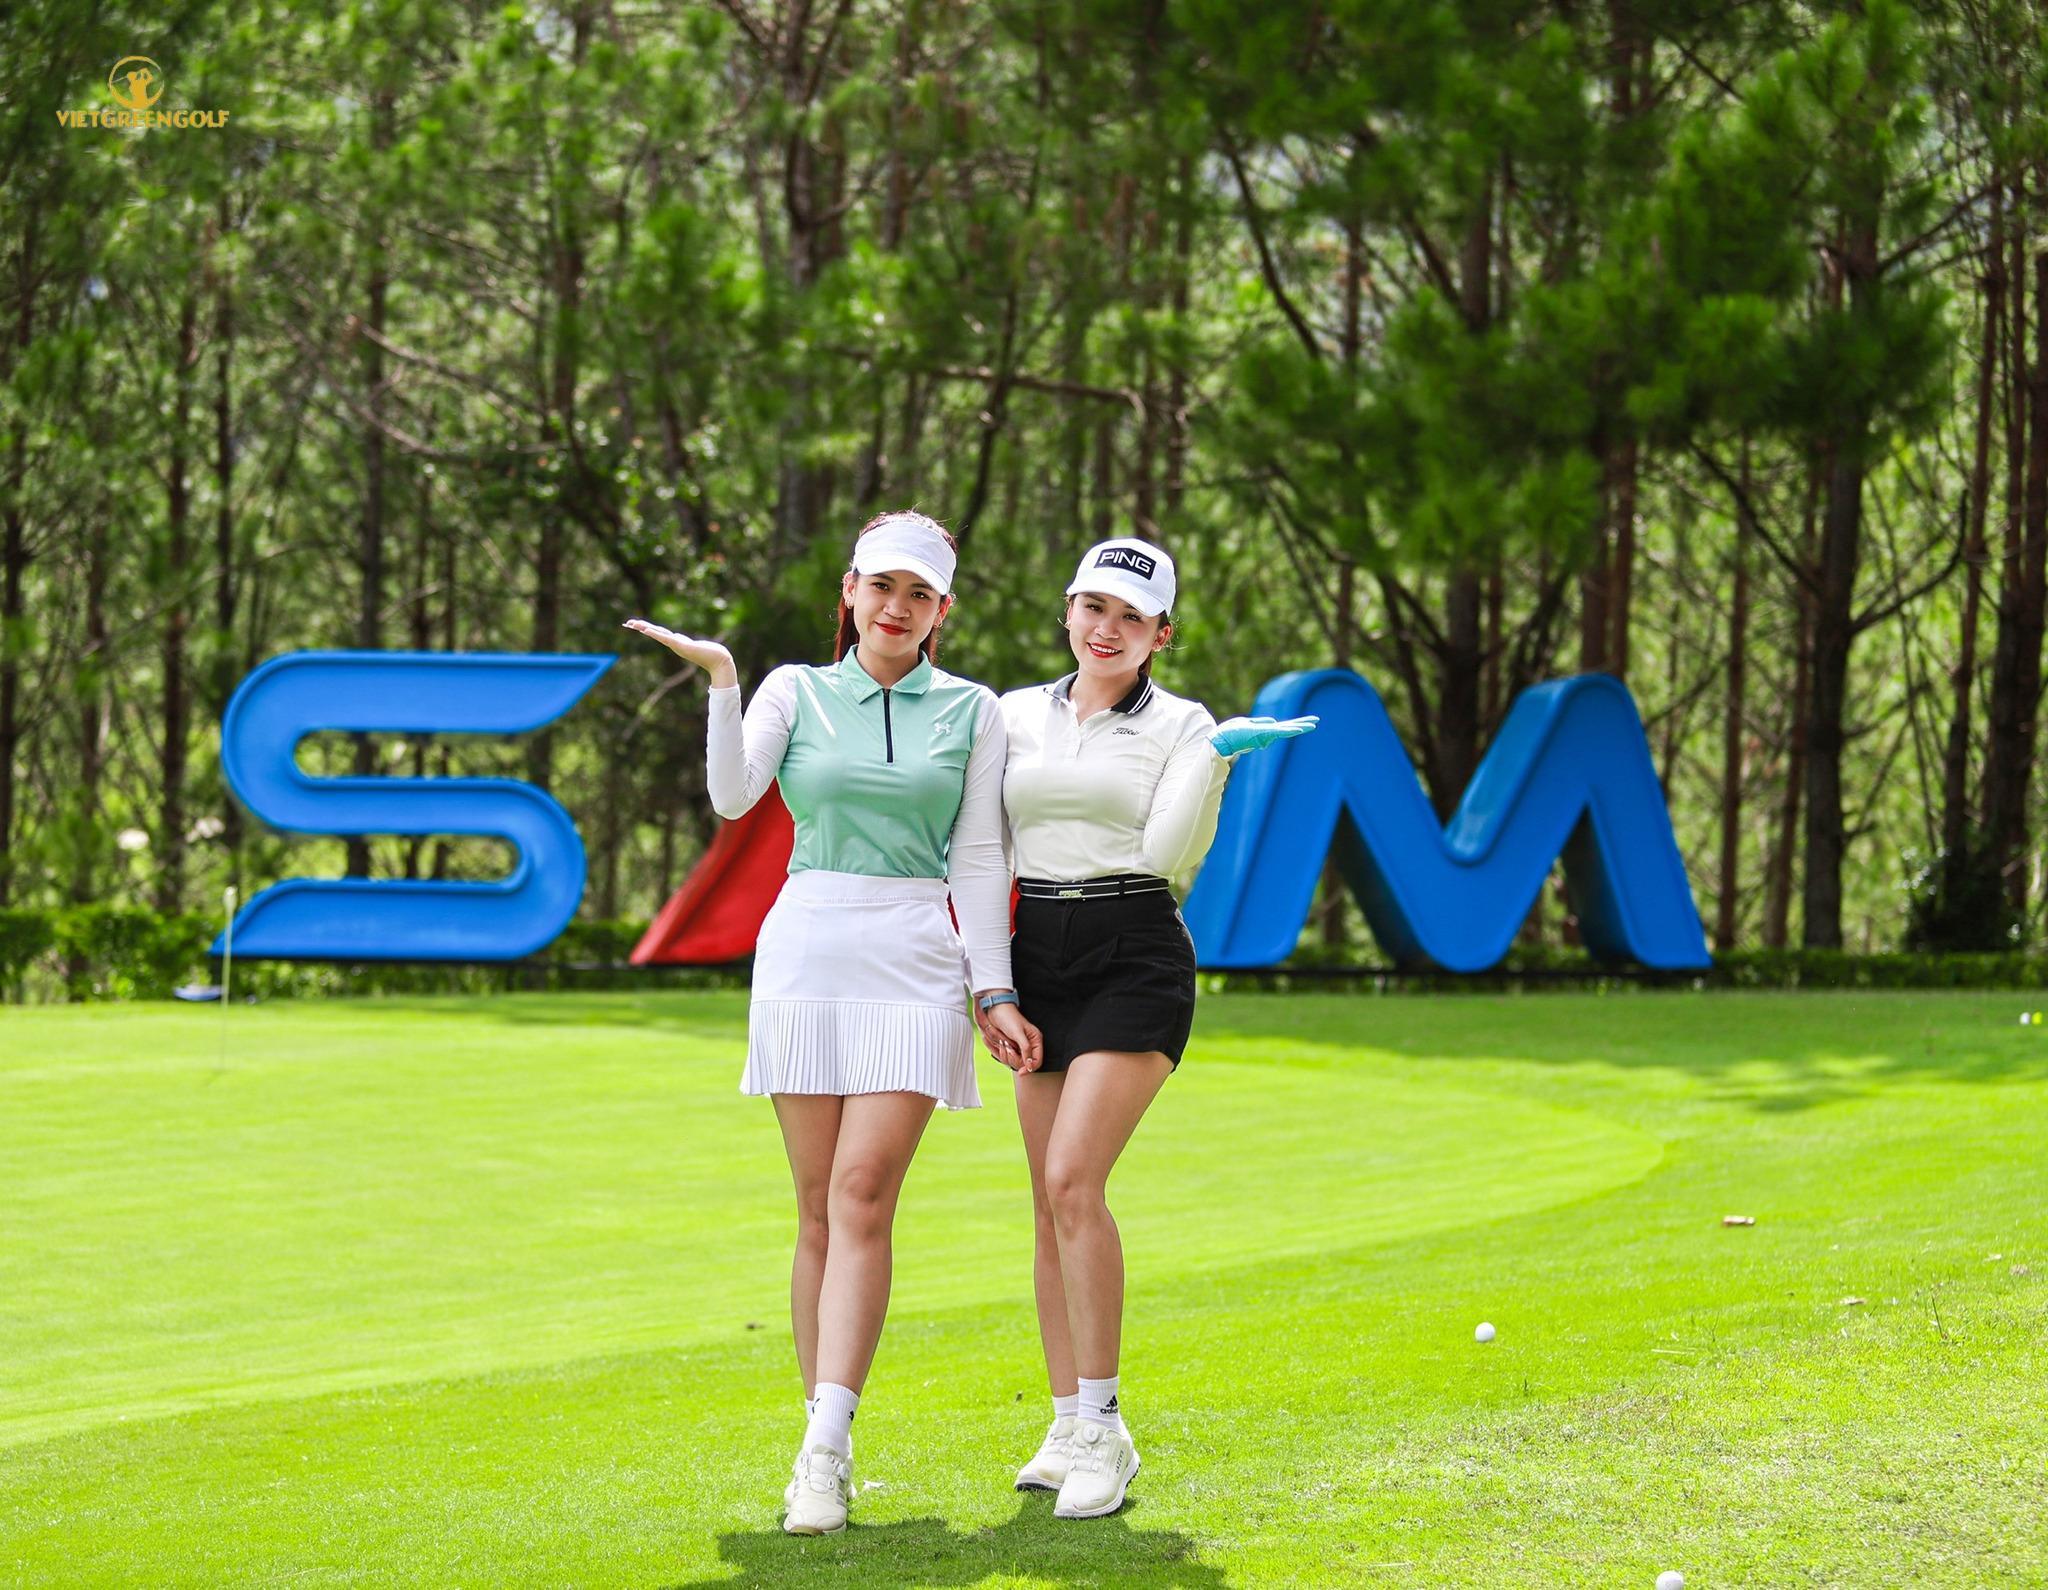  SAM Tuyền Lâm, SAM Tuyền Lâm Golf Club, Viet Green Golf, Combo Stay & Play SAM Tuyền Lâm Golf Club 3 ngày 2 đêm